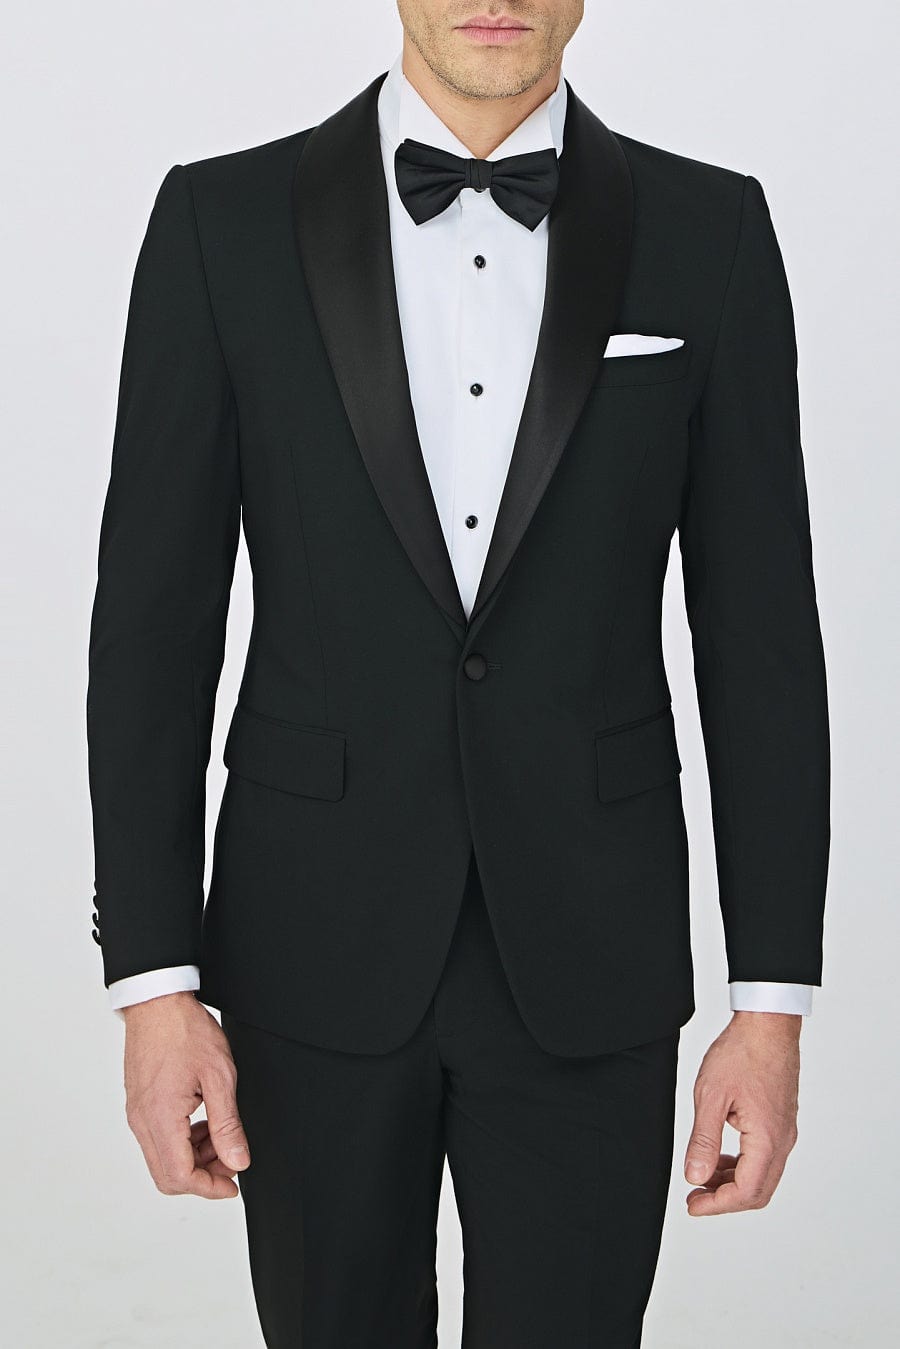 aesido Business Casual Black Shawl Lapel Men's Suit (Blazer+Pants)